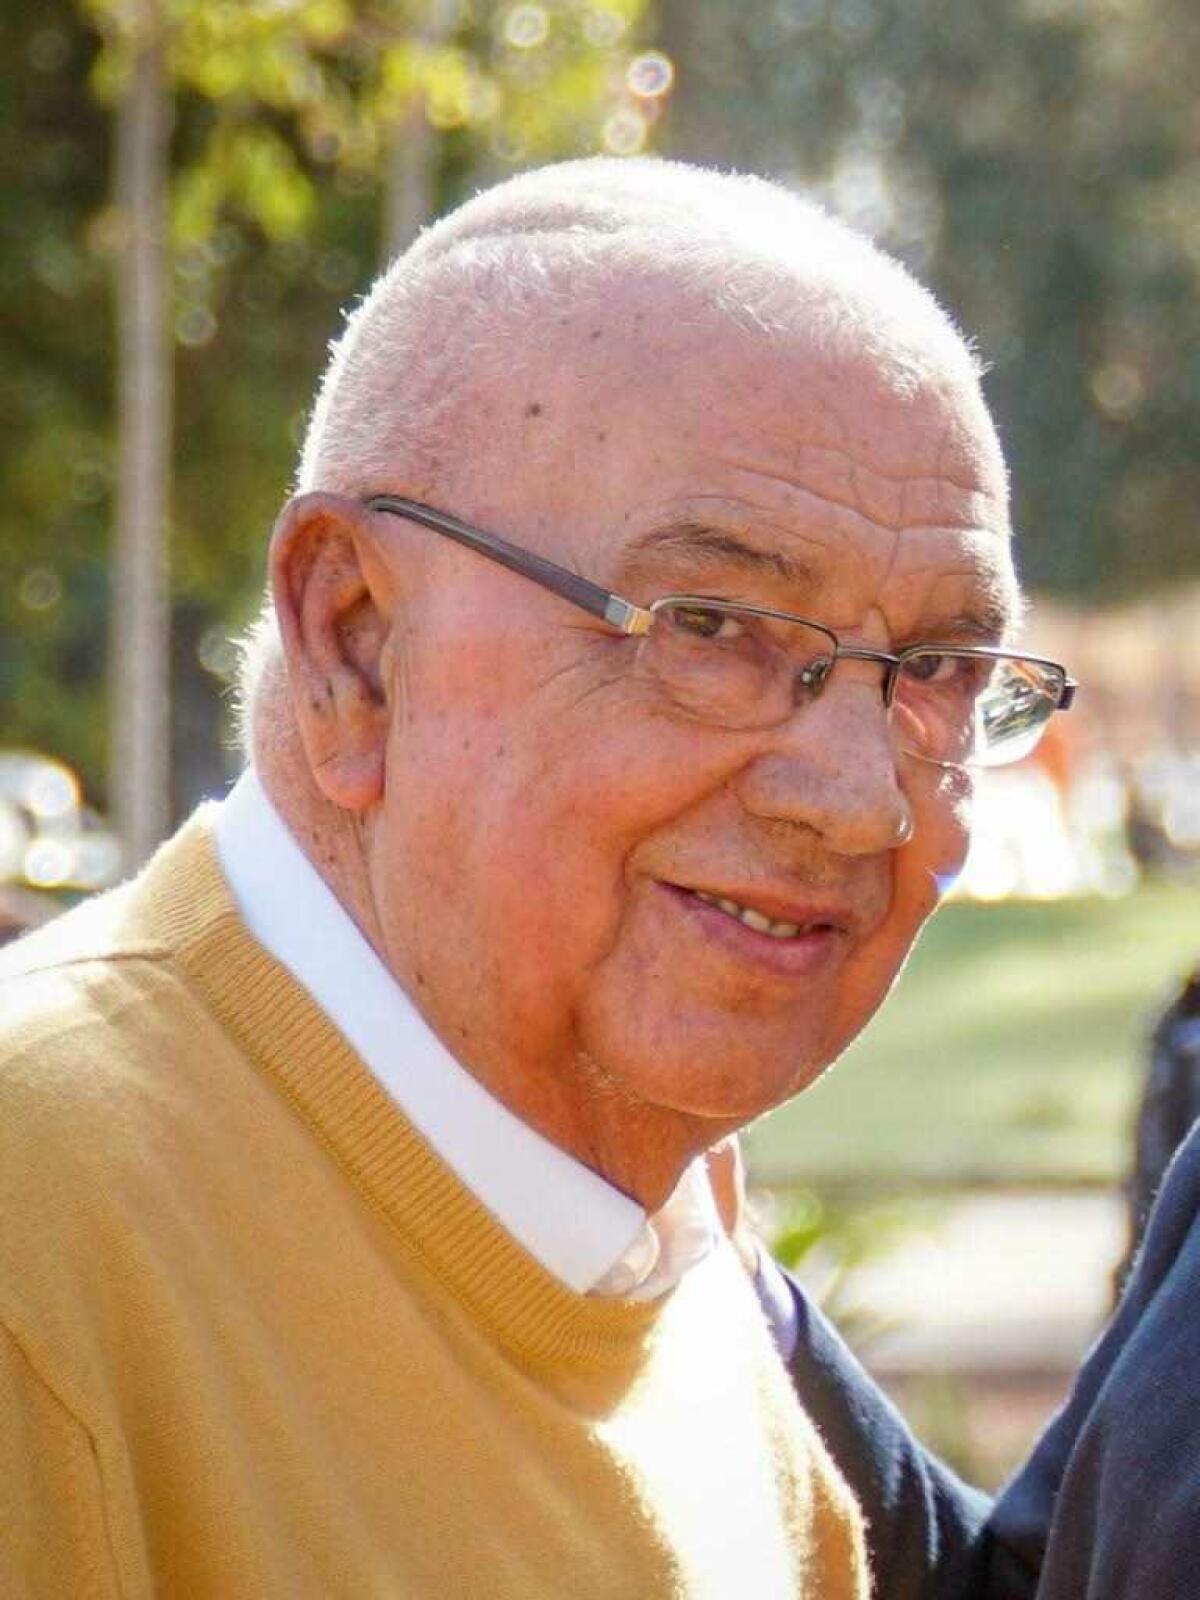 El ex alcalde de la Vila Joiosa Juan Segovia Esquerdo ha fallecido a los 73 años